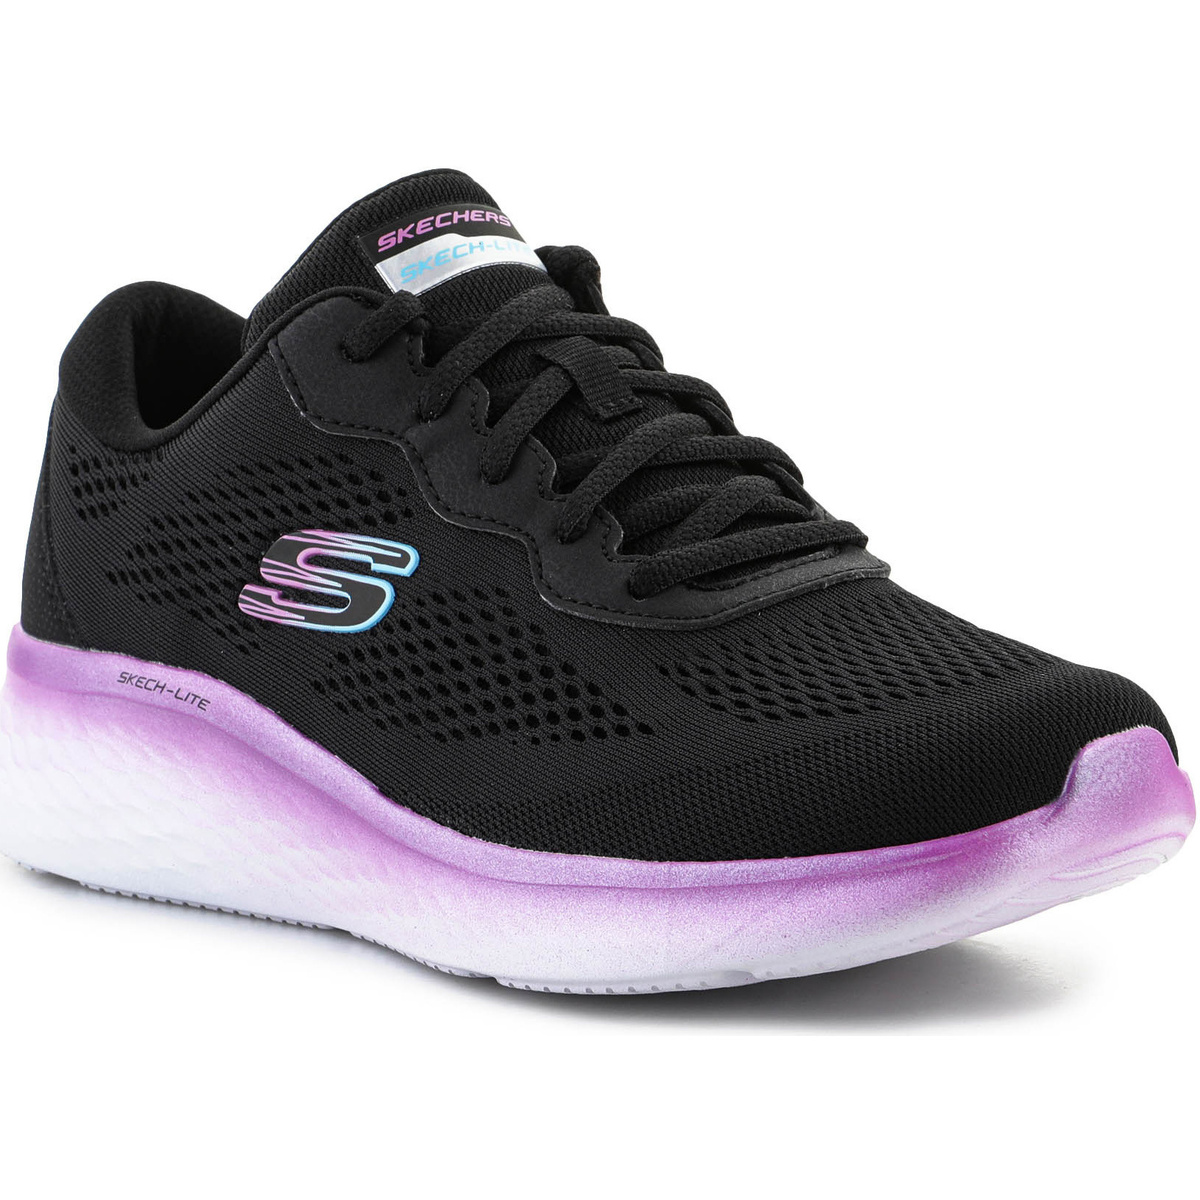 Παπούτσια του τέννις Skechers Skech-Lite Pro-Stunning Steps 150010-BKPR